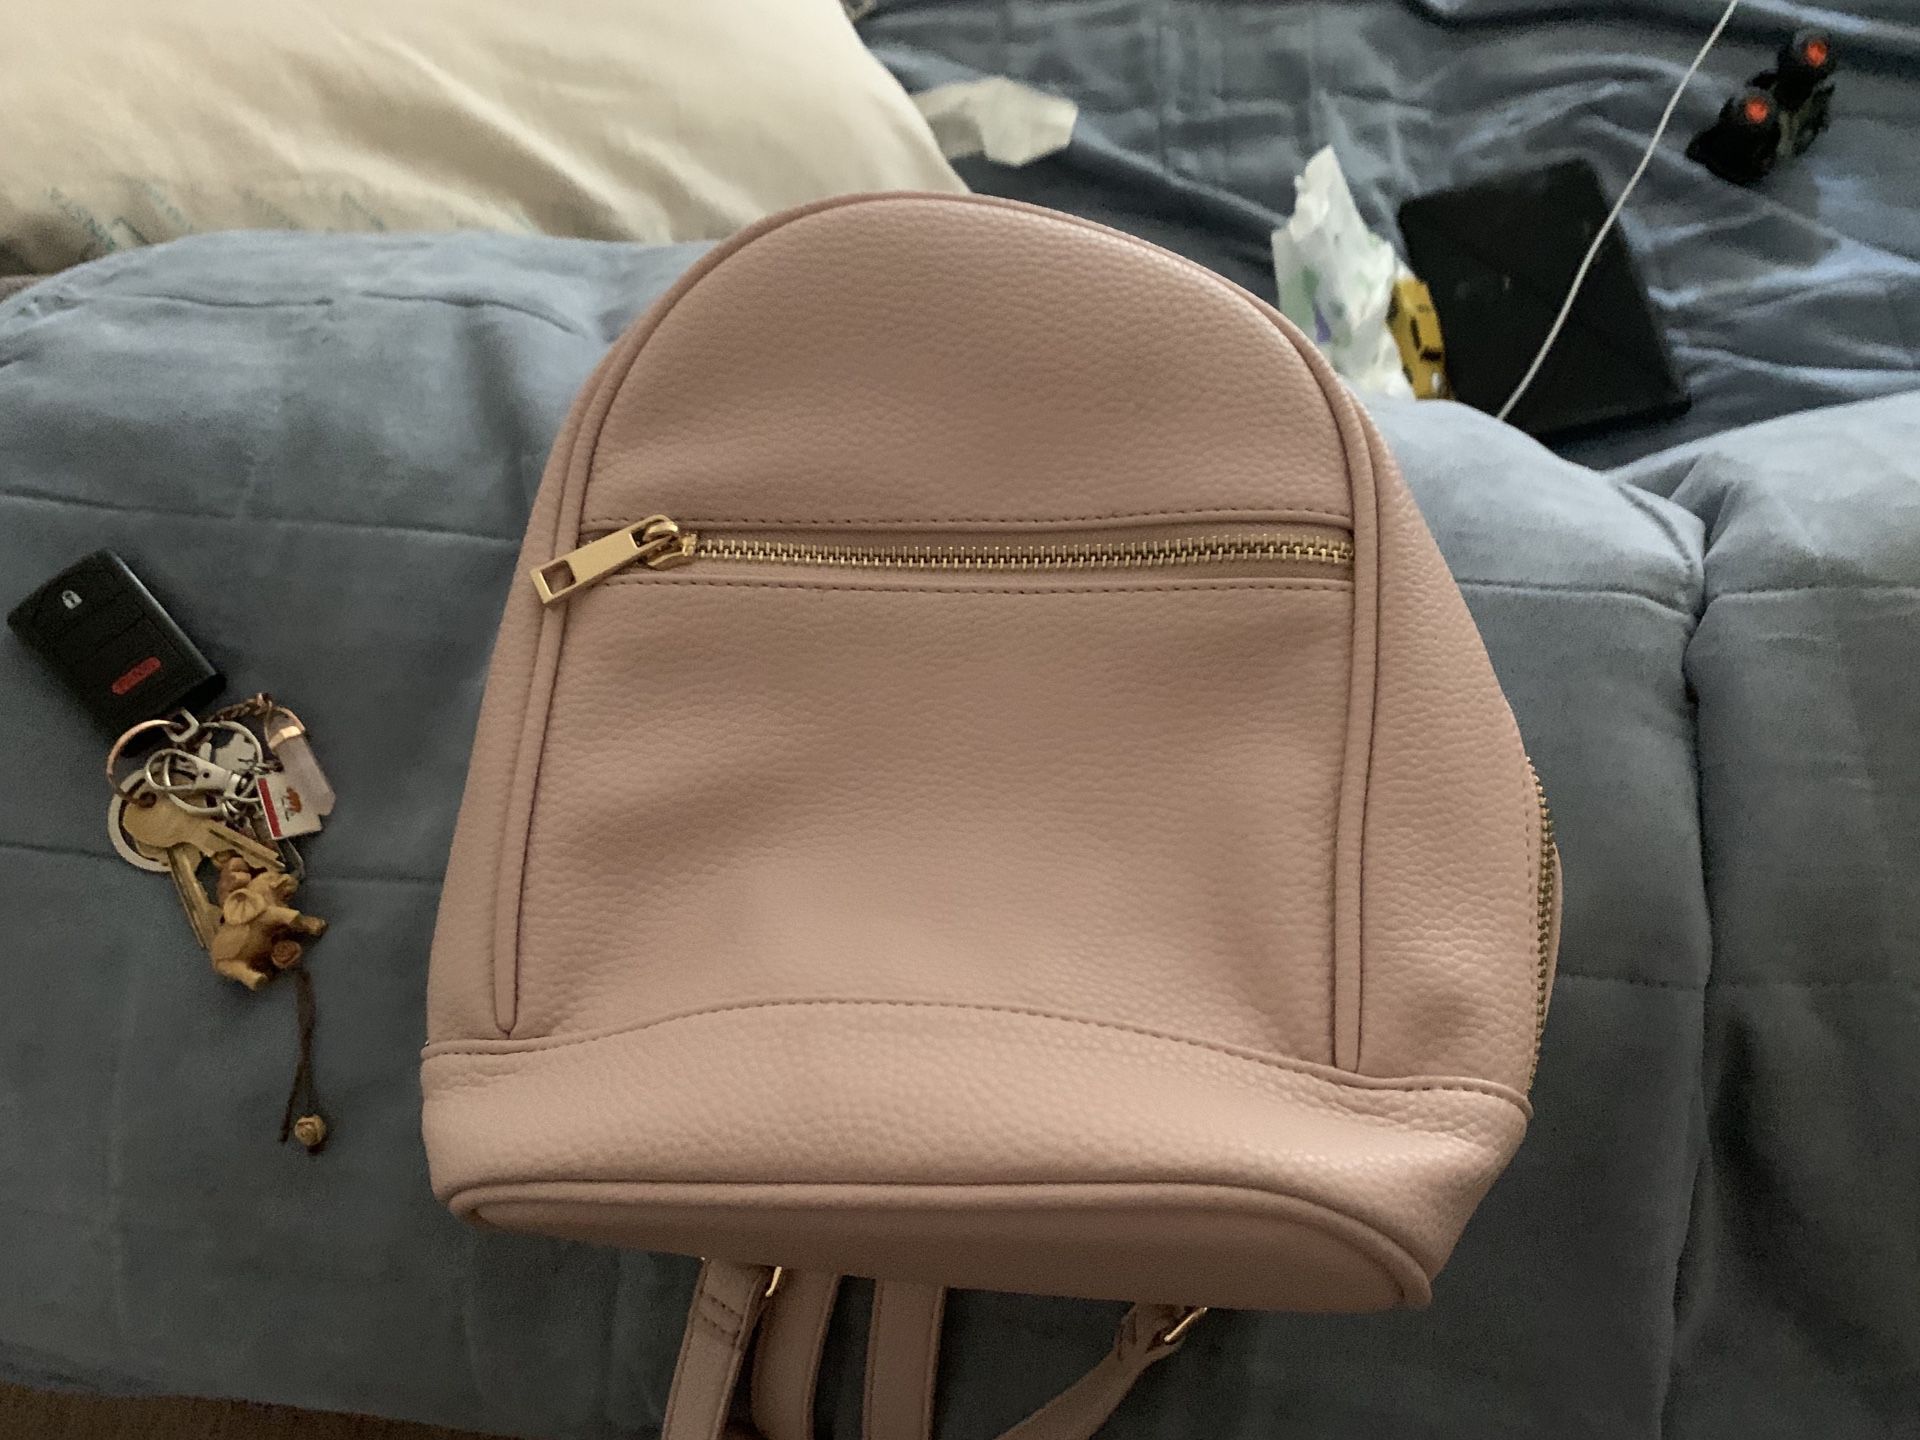 Pink forever 21 backpack